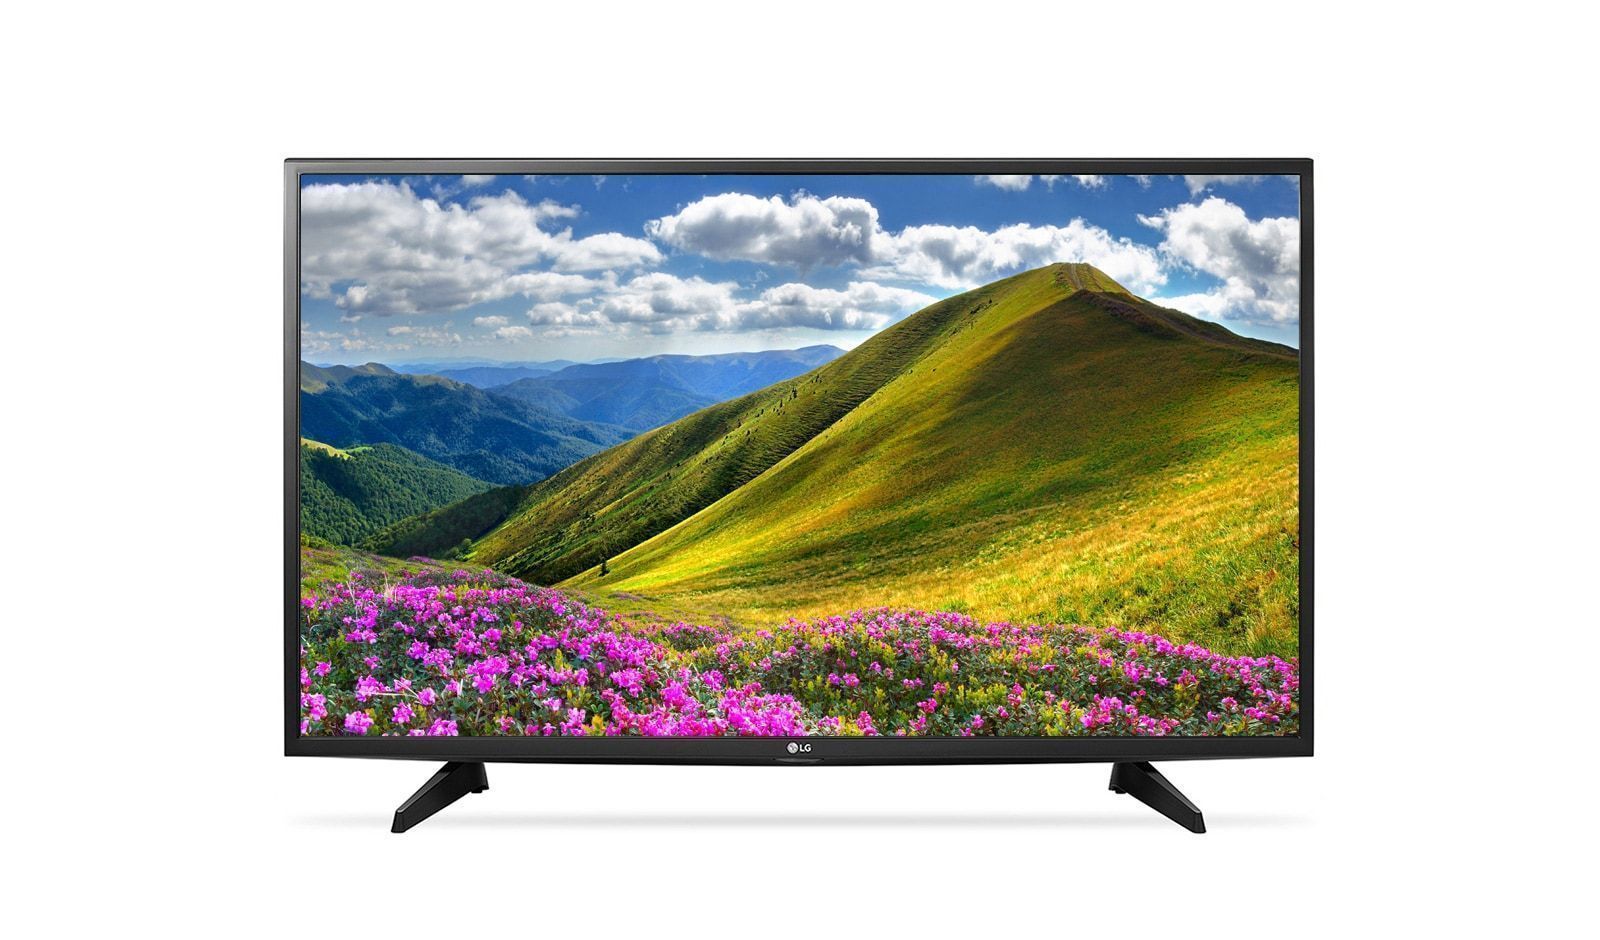 Хороший телевизор 32 диагональ. 32lg510u. Телевизор LG 43lj510v. LG 32lf510u. ЖК телевизор LG 32lj510u.